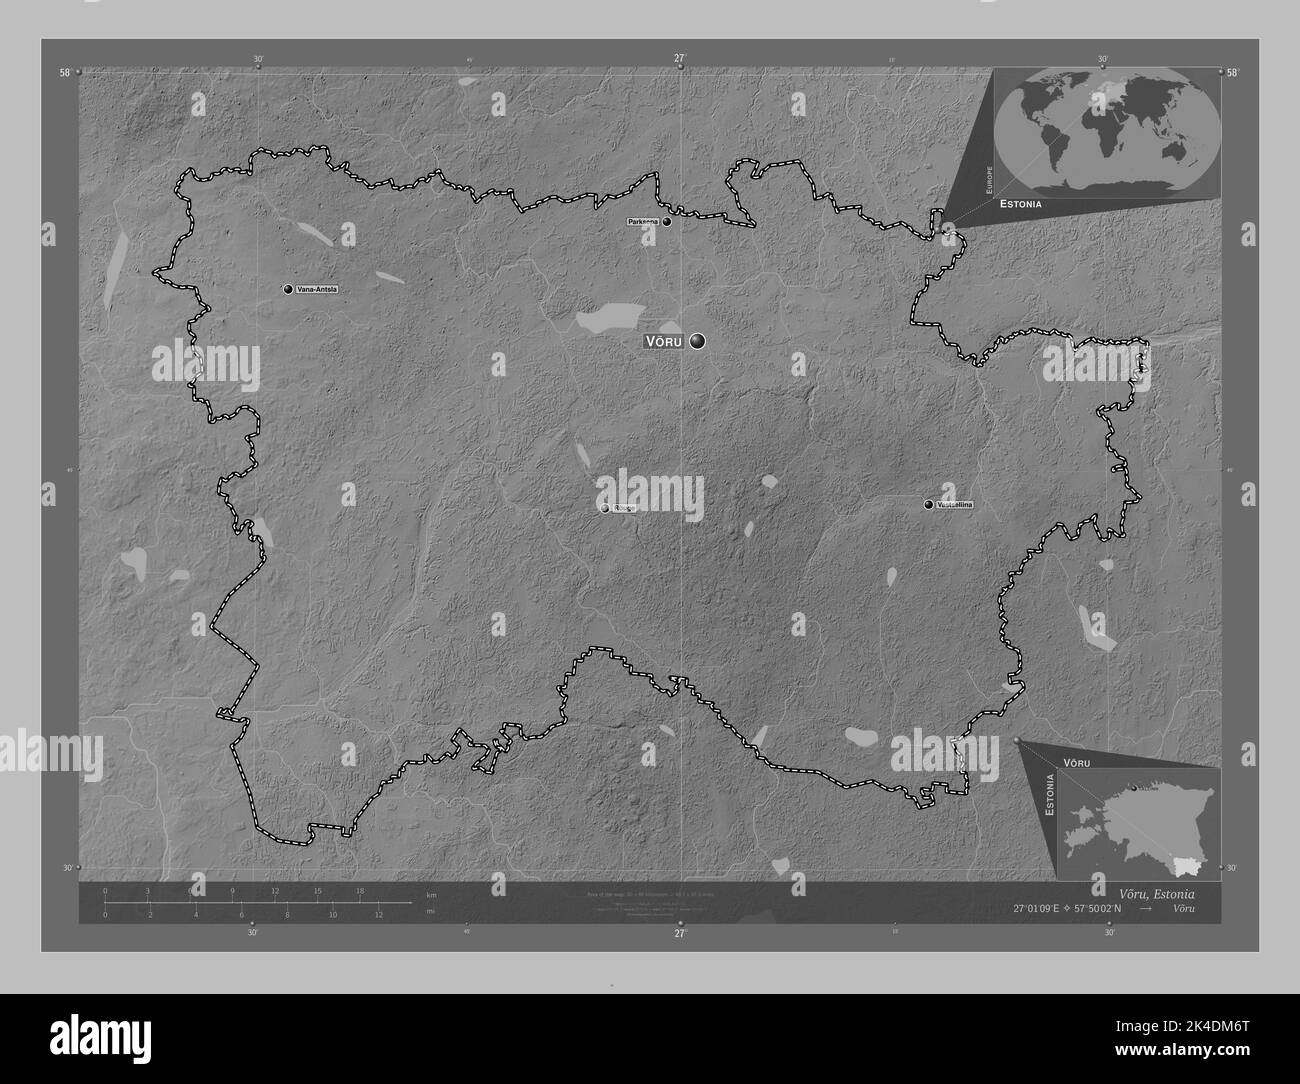 Voru, comté d'Estonie. Carte d'altitude en niveaux de gris avec lacs et rivières. Lieux et noms des principales villes de la région. Emplacement auxiliaire d'angle m Banque D'Images